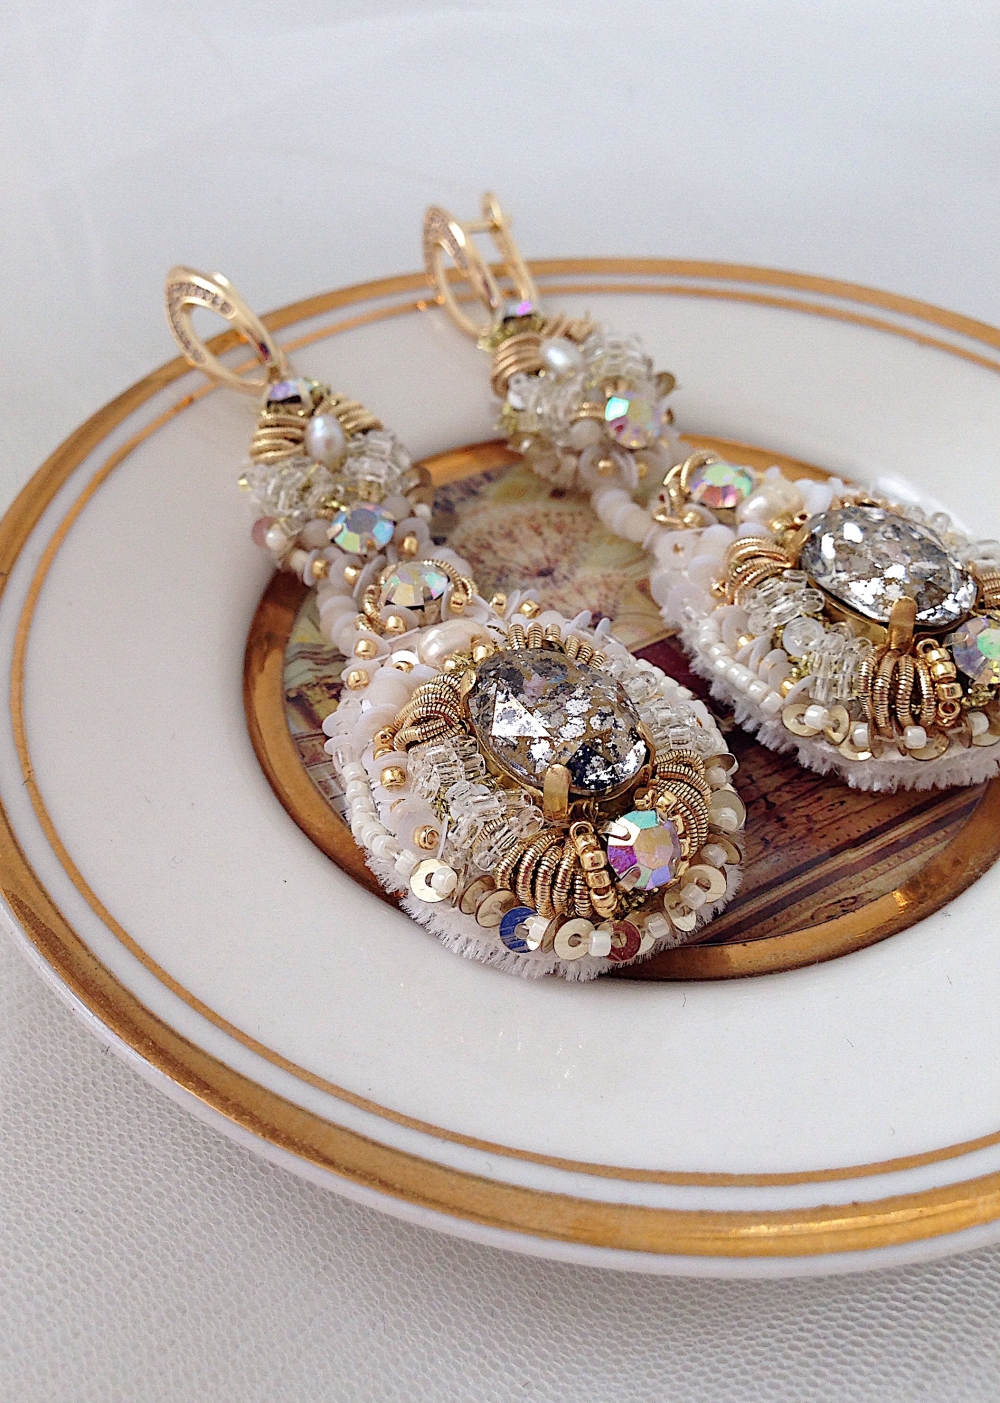 Длинные серьги с ювелирными кристаллами Сваровски, позолоченной фурнитурой, итальянскими пайэтками, винтажным бисером и канителью 